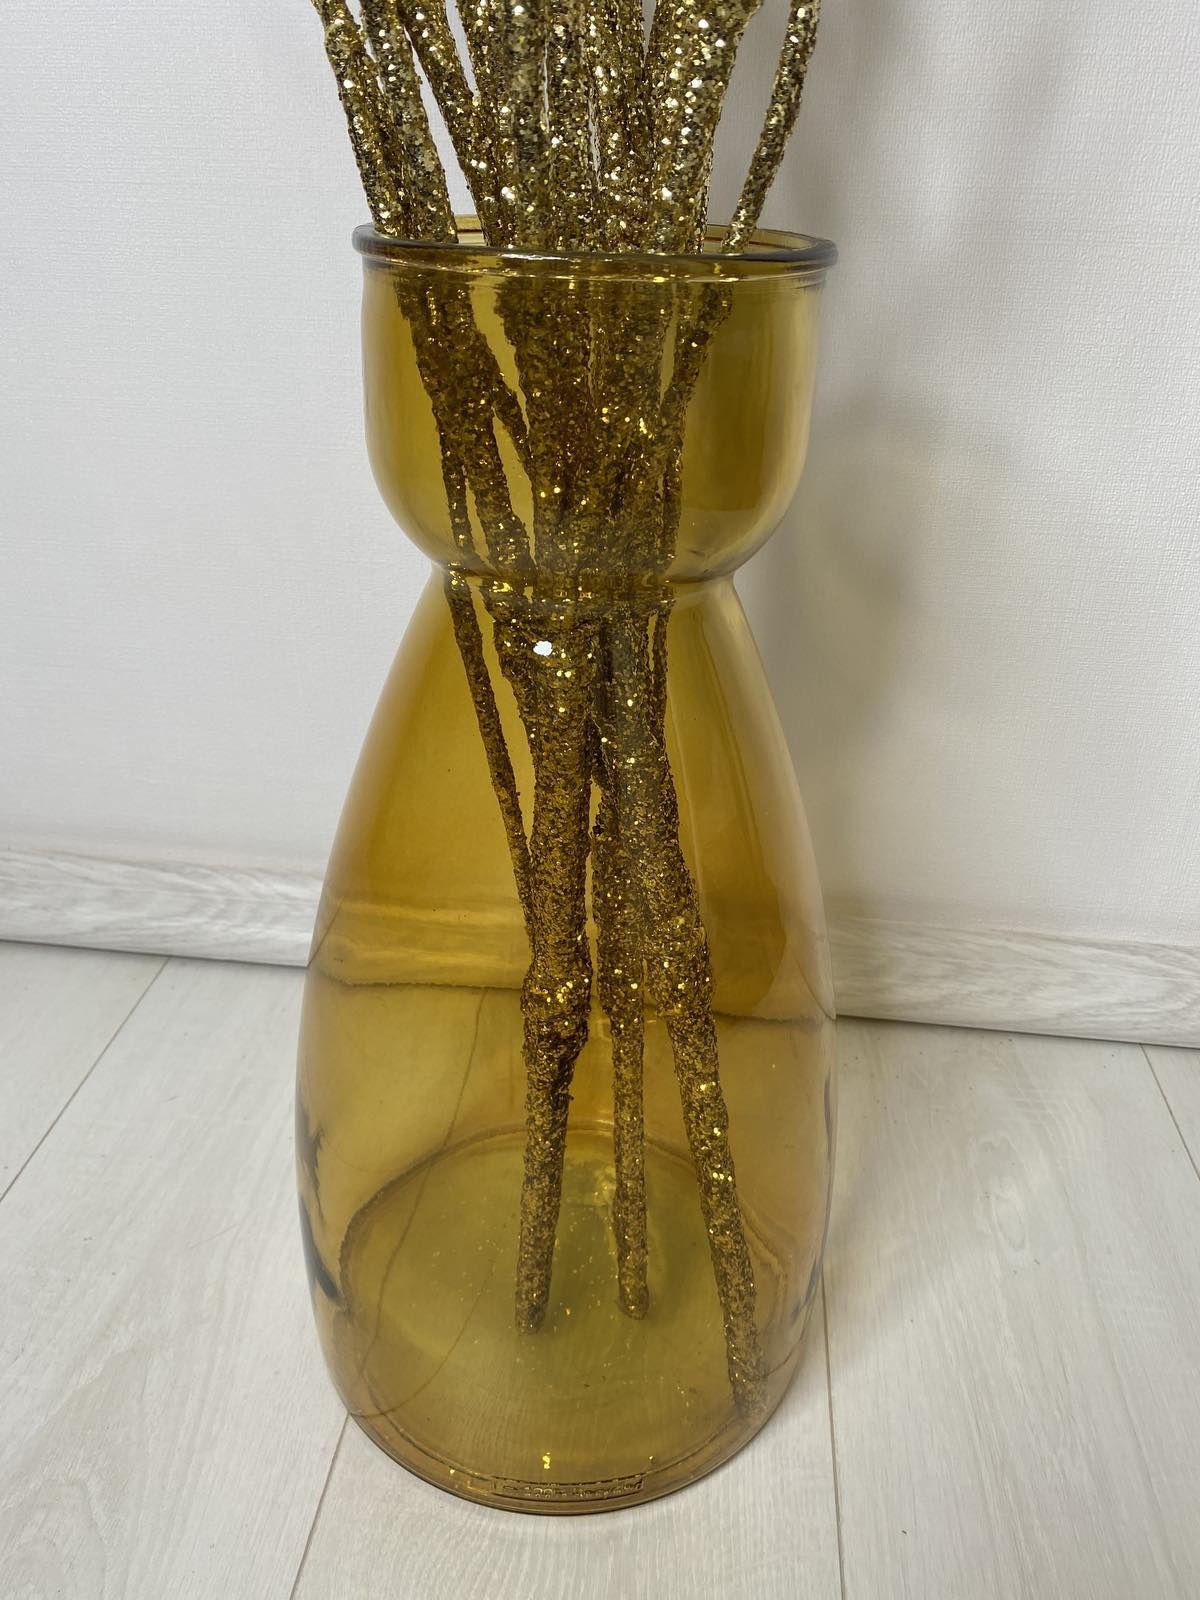 Интерьер/декор
Золотое дерево-Коряги 3 шт. (Высот. 120 см.) - 100 грн/